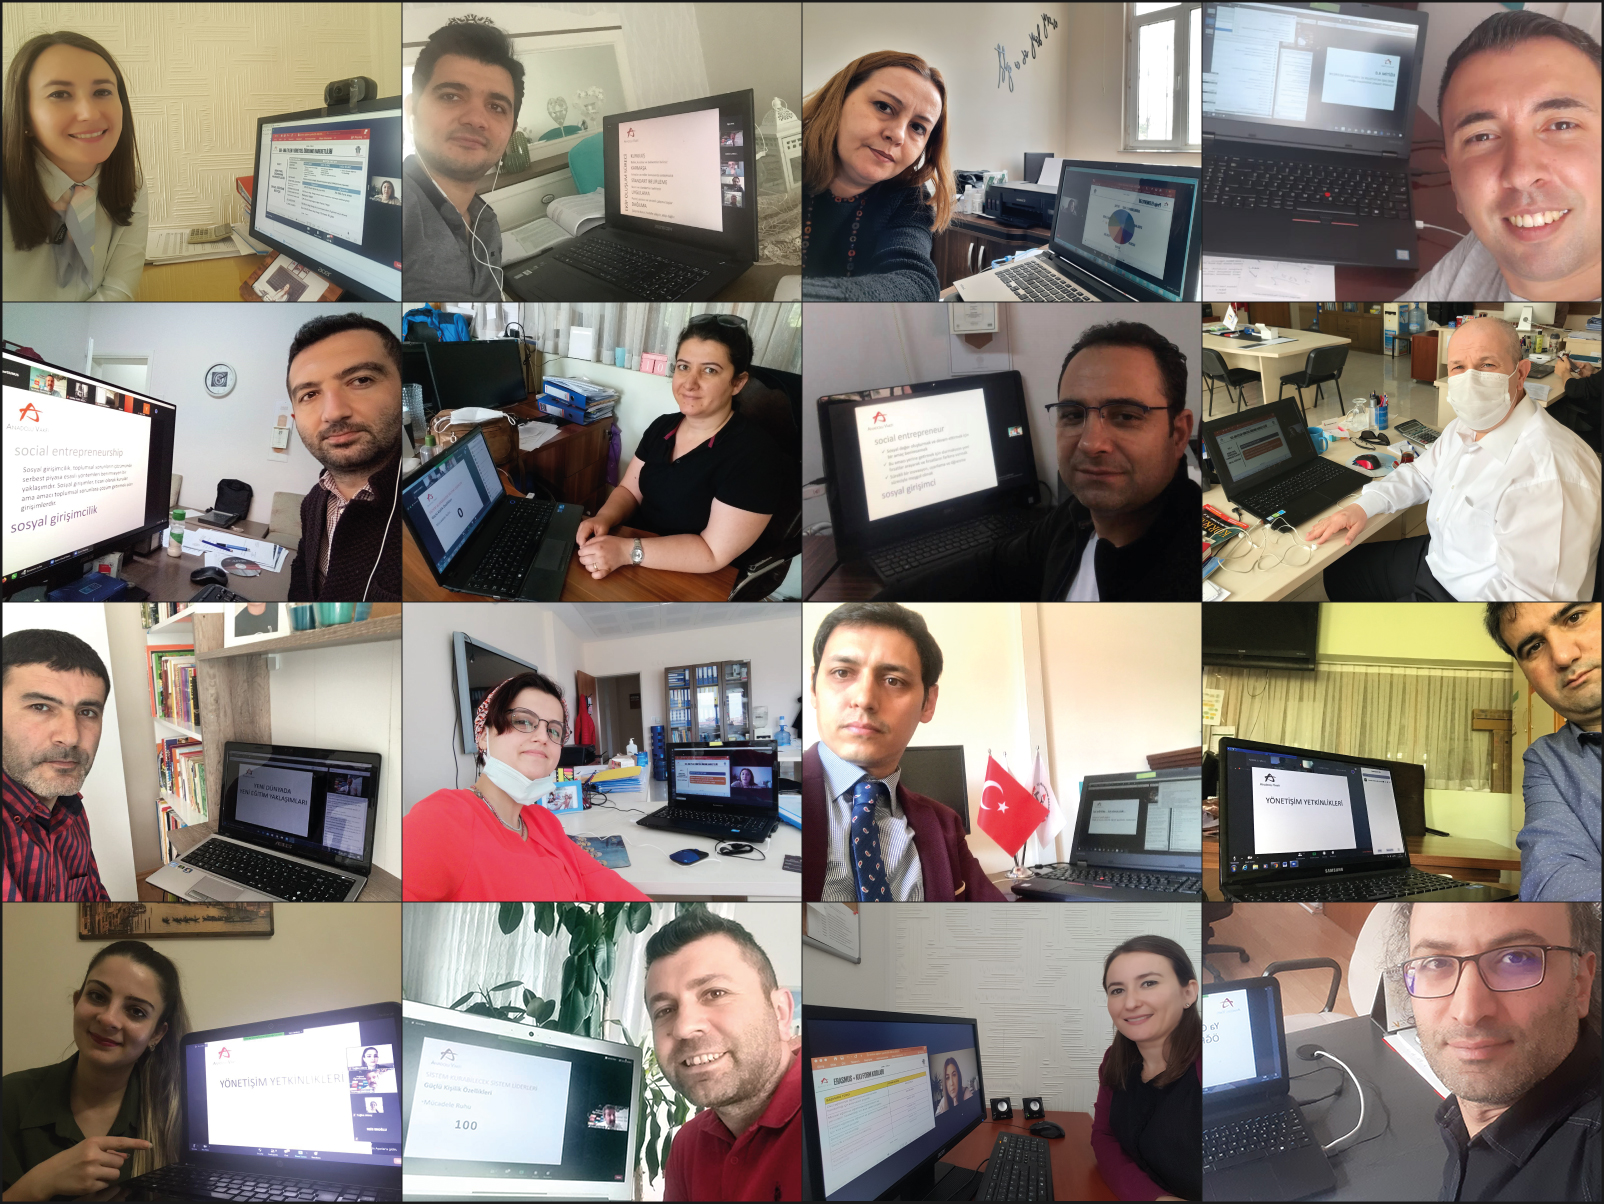 Anadolu Vakfı Değerli Öğretmenim Programı ile Kocaelili Öğretmenleri Dijital Dünyaya Hazırlıyor